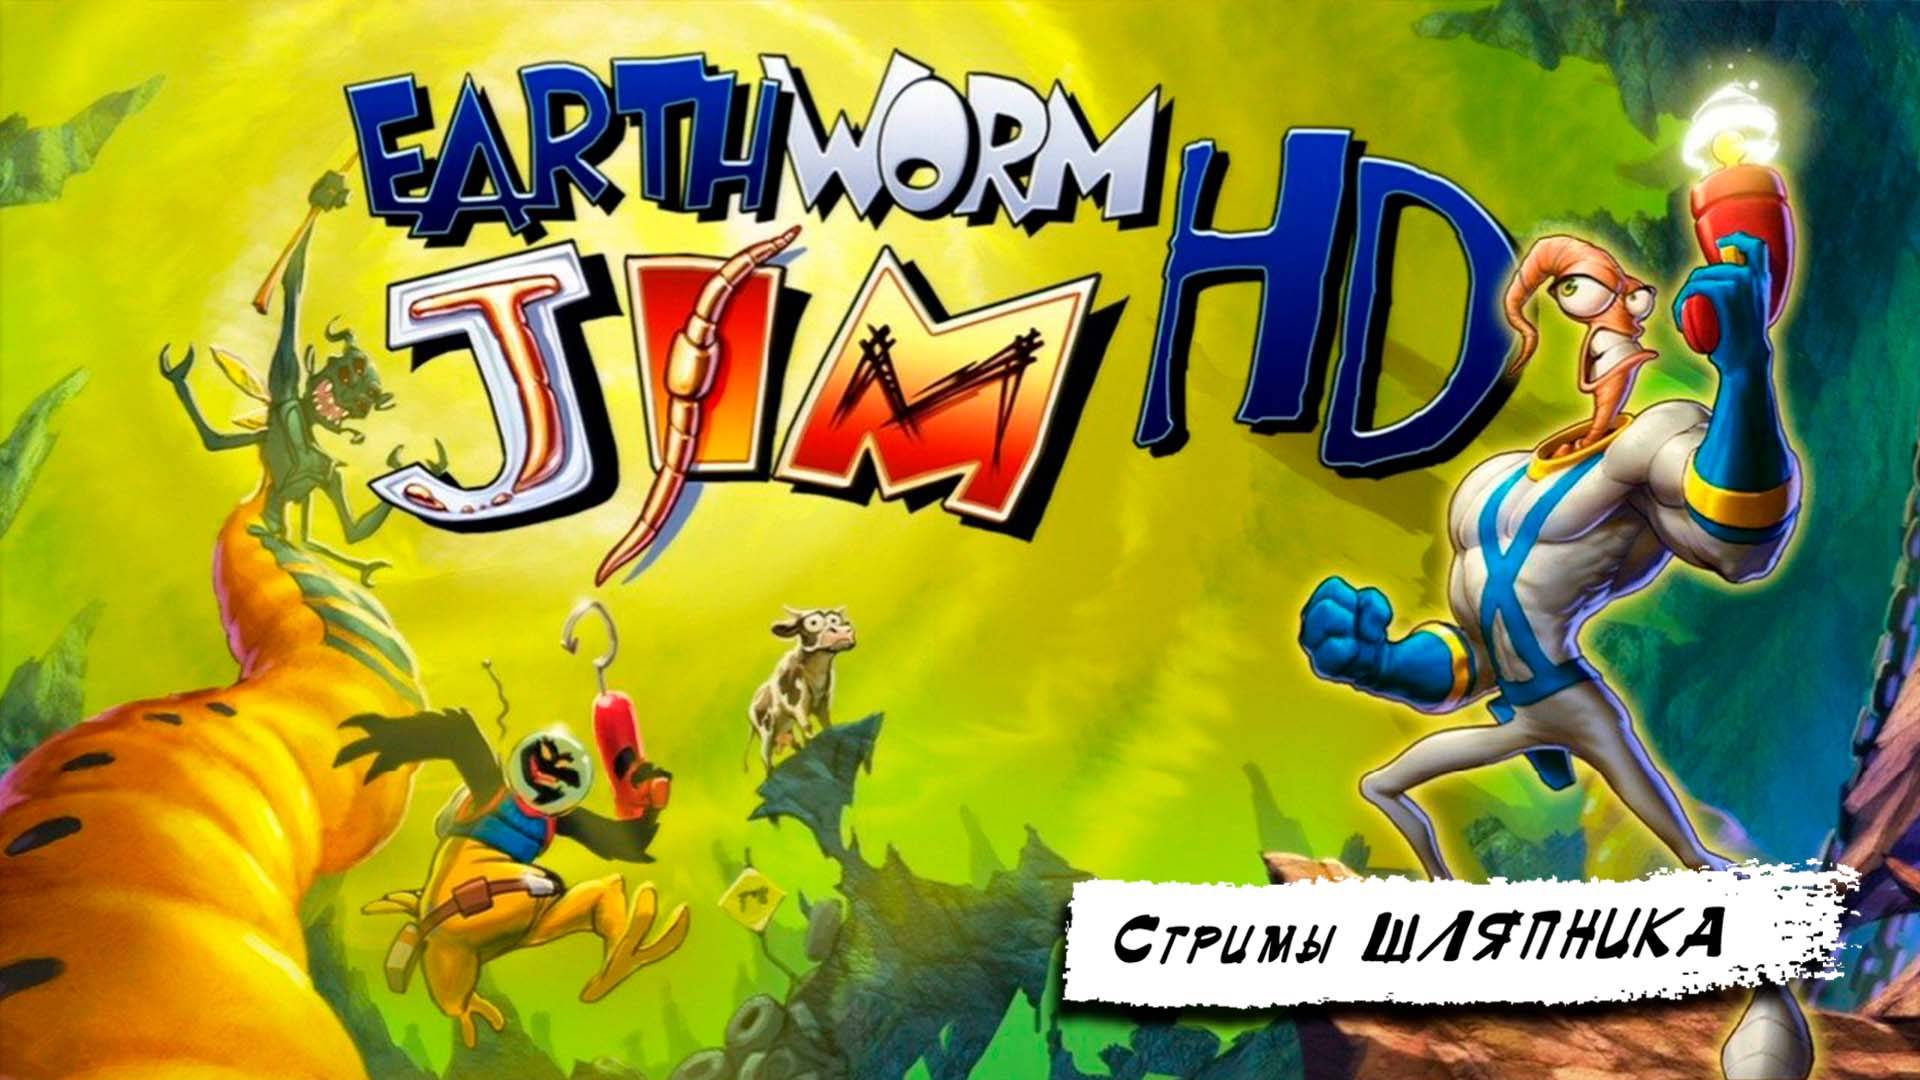 Earthworm Jim HD [PS3] [HARD ORIGINAL]